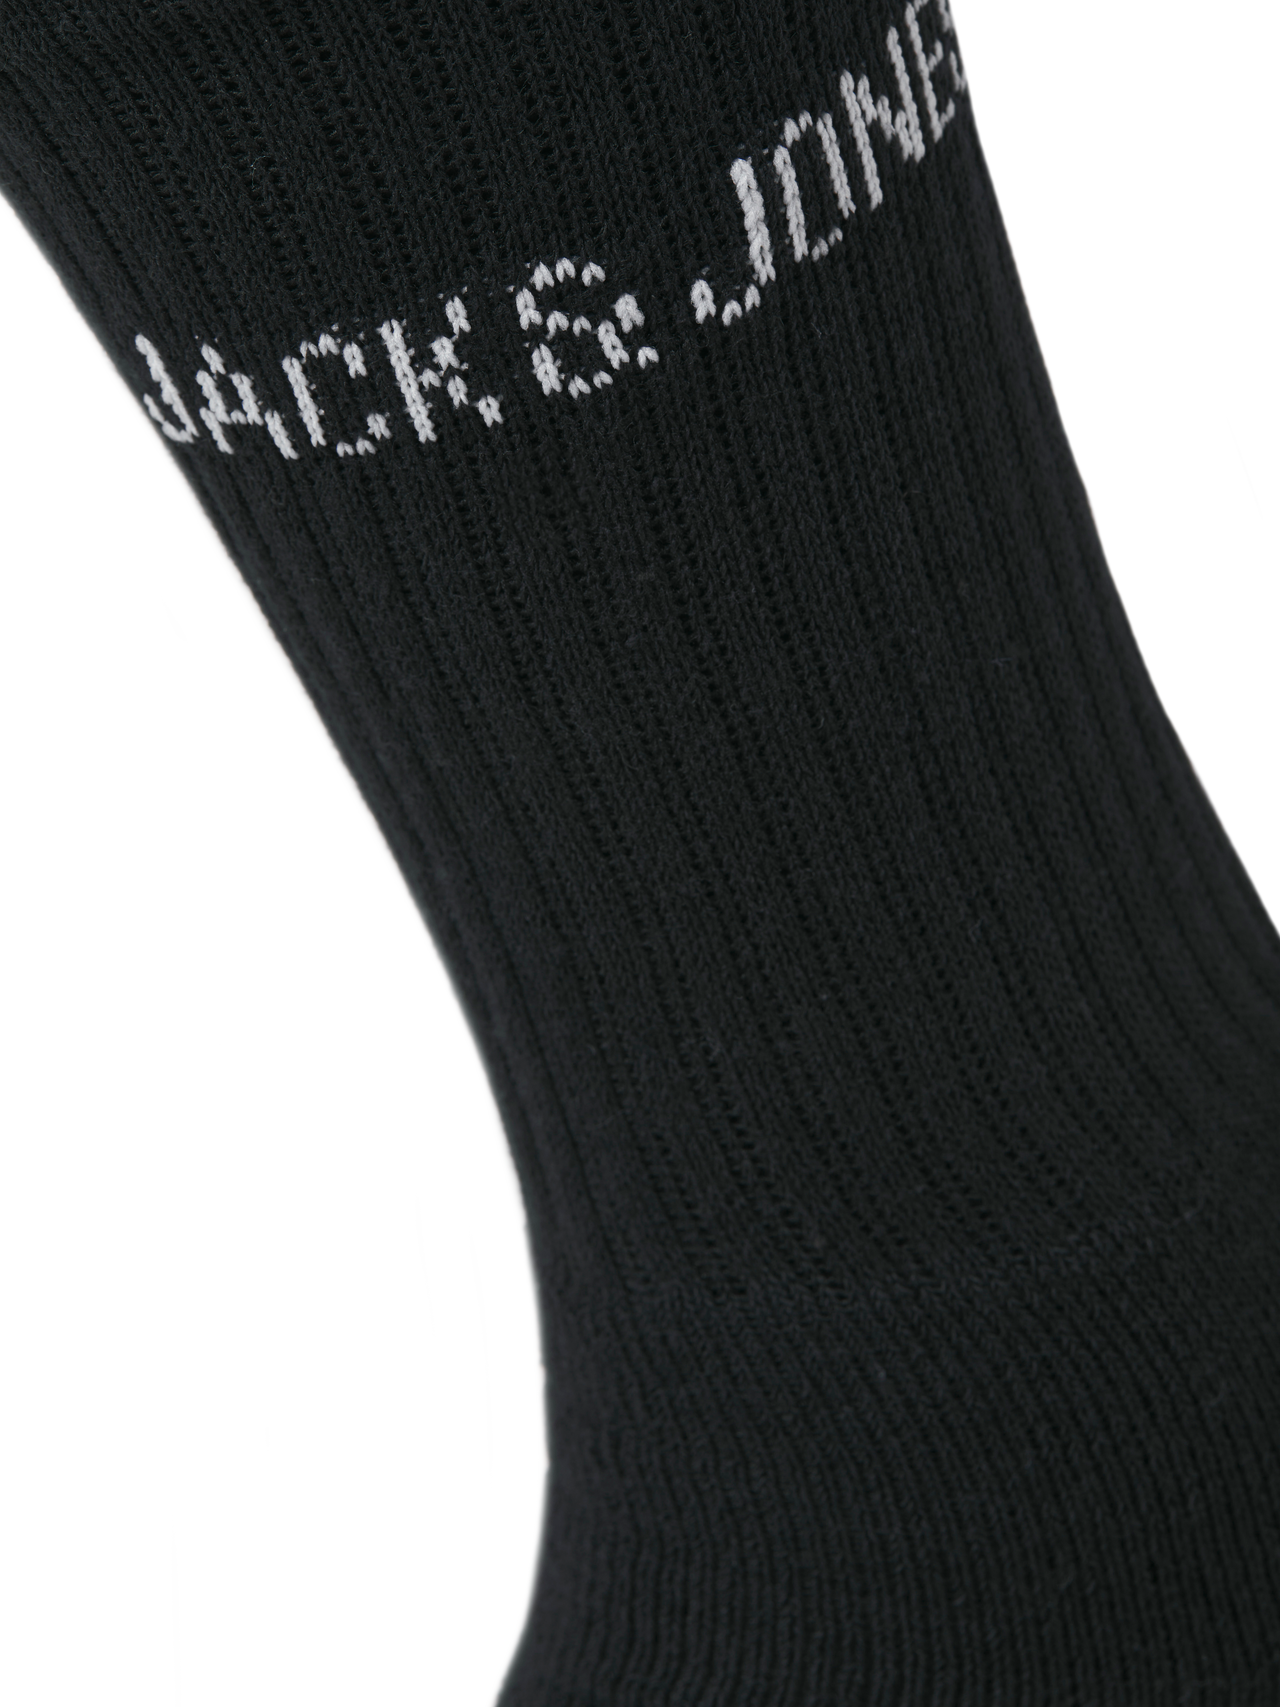 Jack & Jones 9-συσκευασία Κάλτσες -Black - 12266607